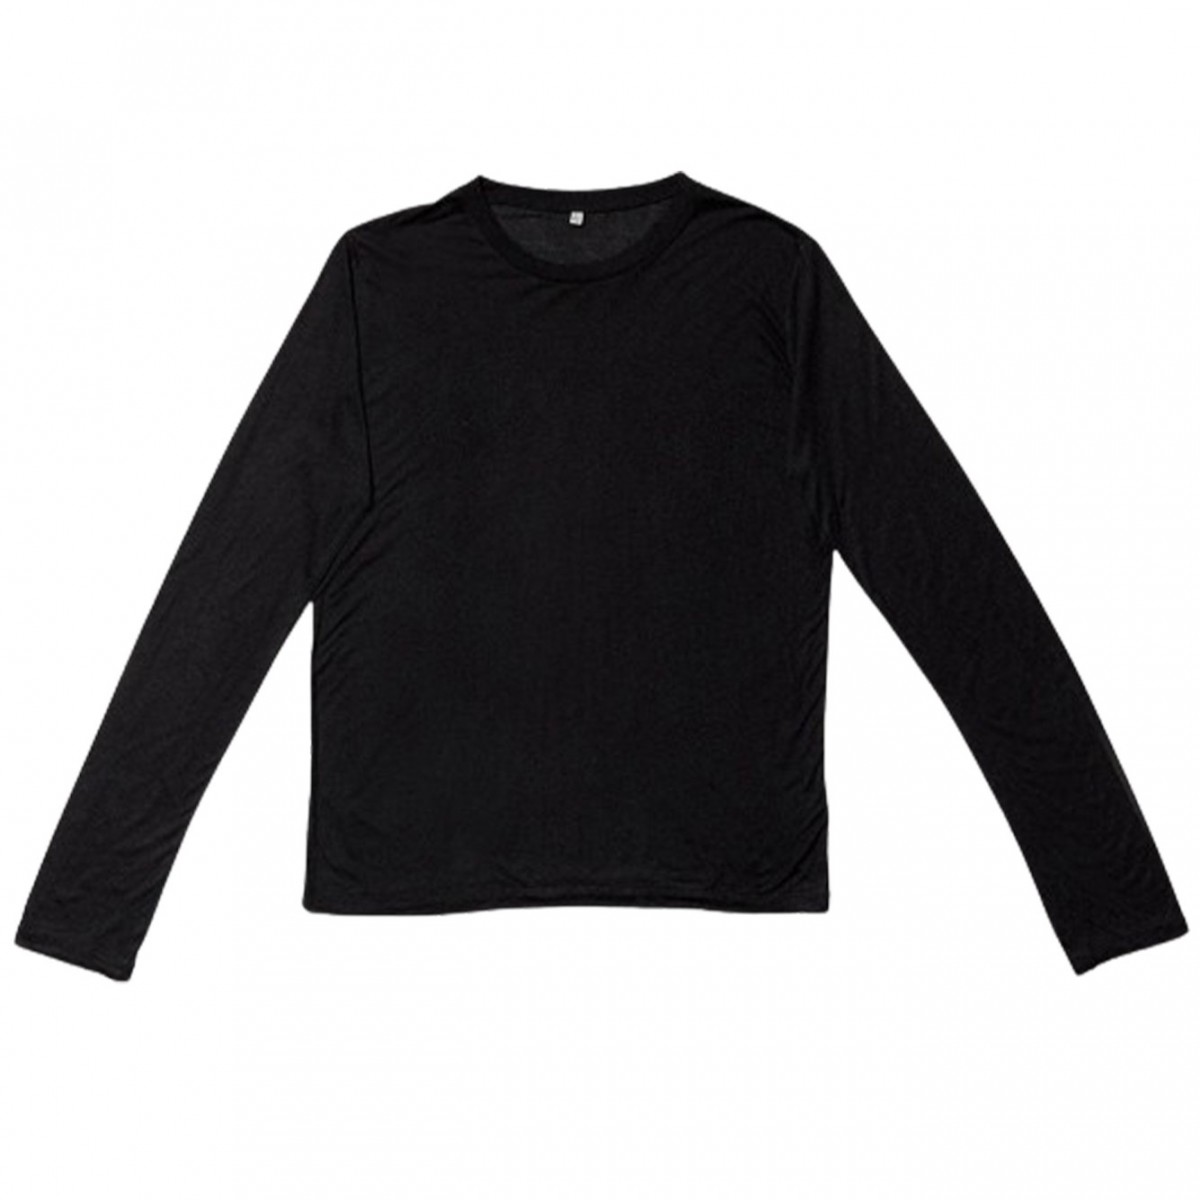 Black Long Sleeves Sweatshirt